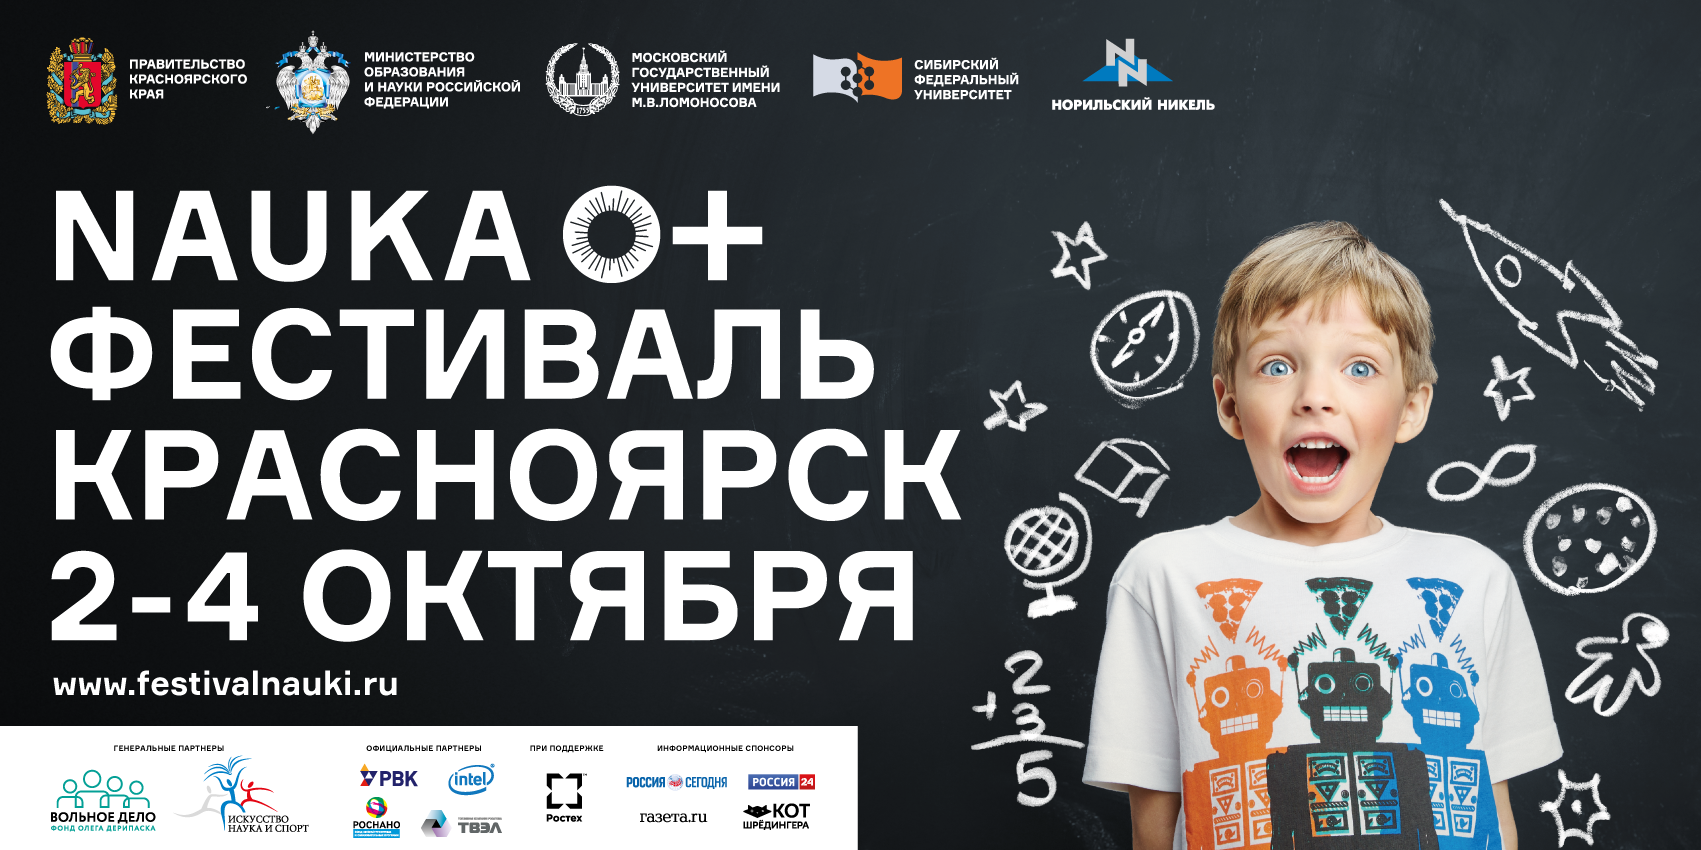 2-4 октября – фестиваль науки в Красноярске Nauka 0+ 